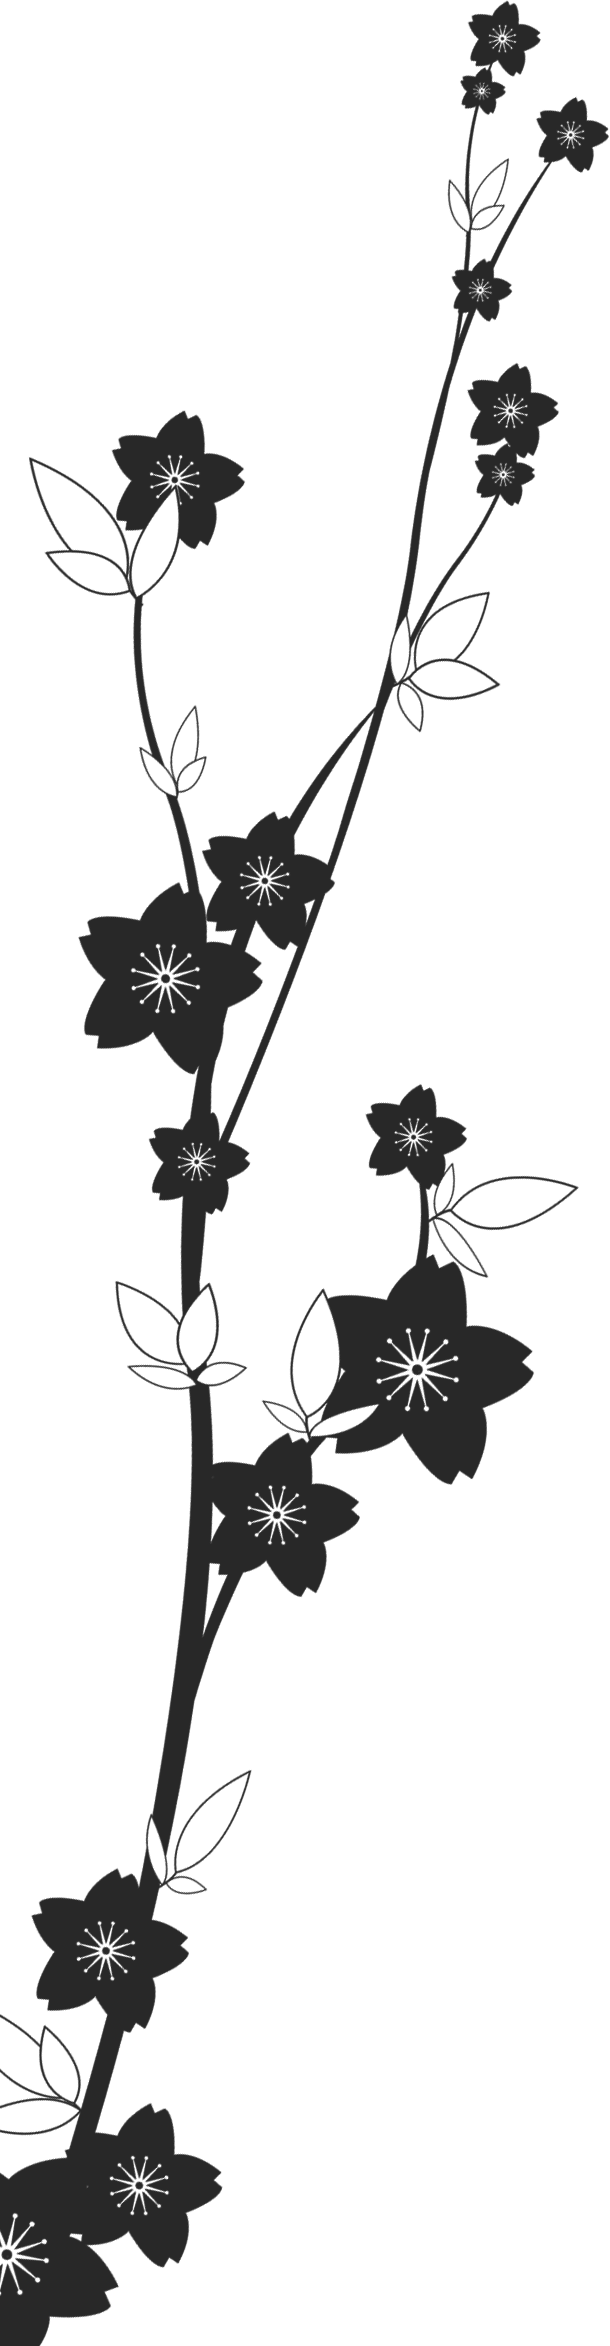 花のイラスト フリー素材 フレーム枠no 481 白黒 茎葉 桜型